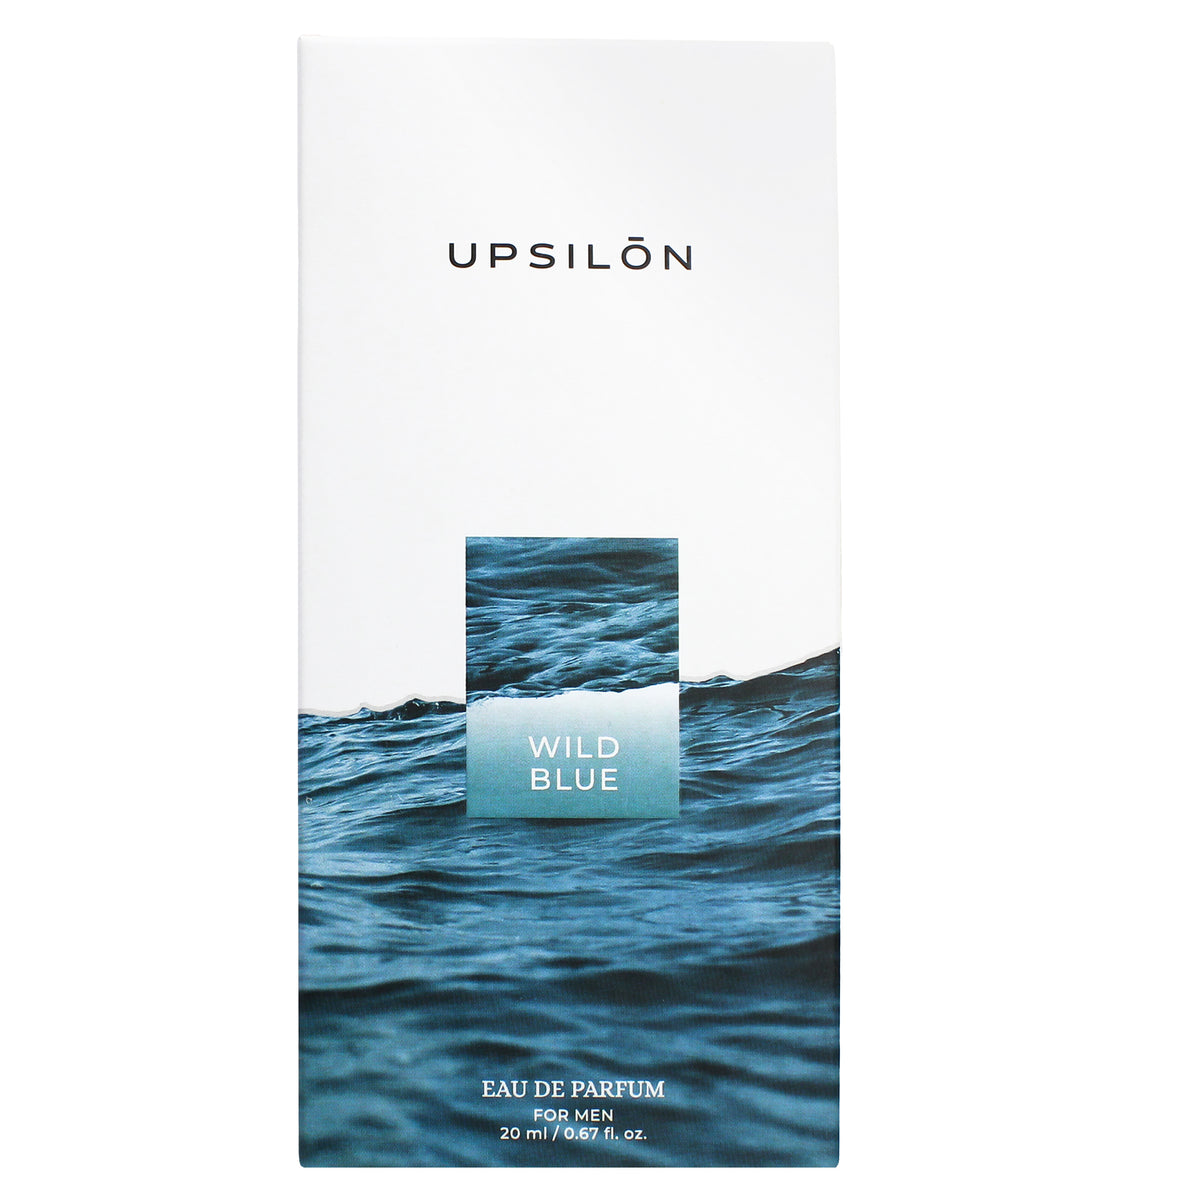 Upsilon Wild Blue Eau de Parfum for Men, 20 ml/0.67 fl. oz.